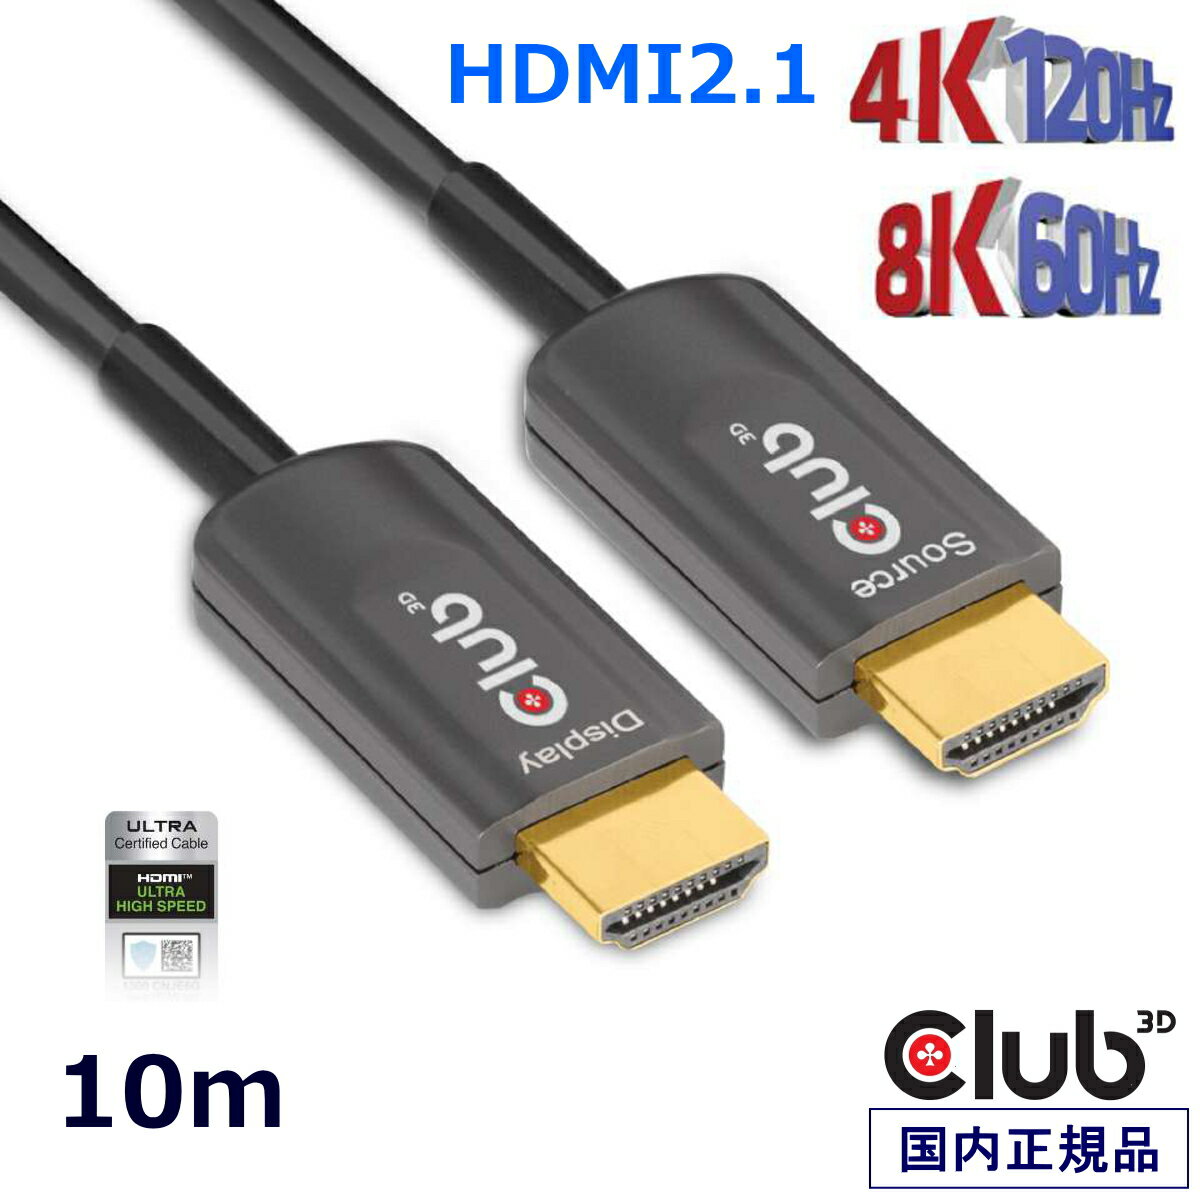 国内正規品 Club3D HDMI 2.1 4K120Hz 48Gbps Male/Male 10m Active Optical Cable アクティブ 光 認証 ケーブル (CAC-1376)